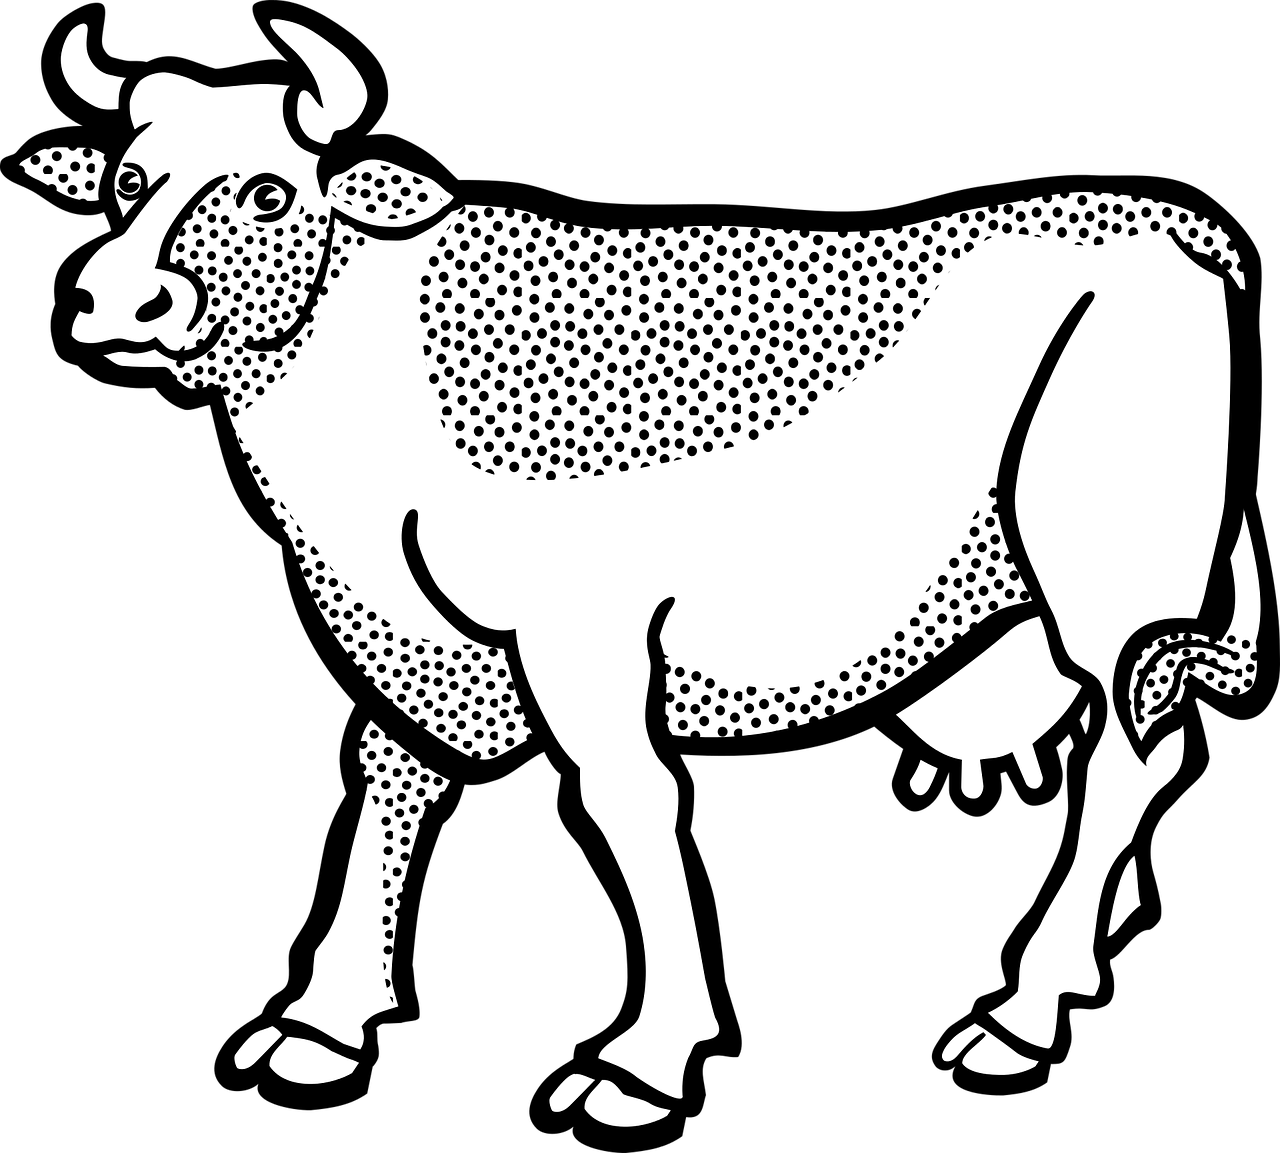 Disegno da colorare di mucca puntinata